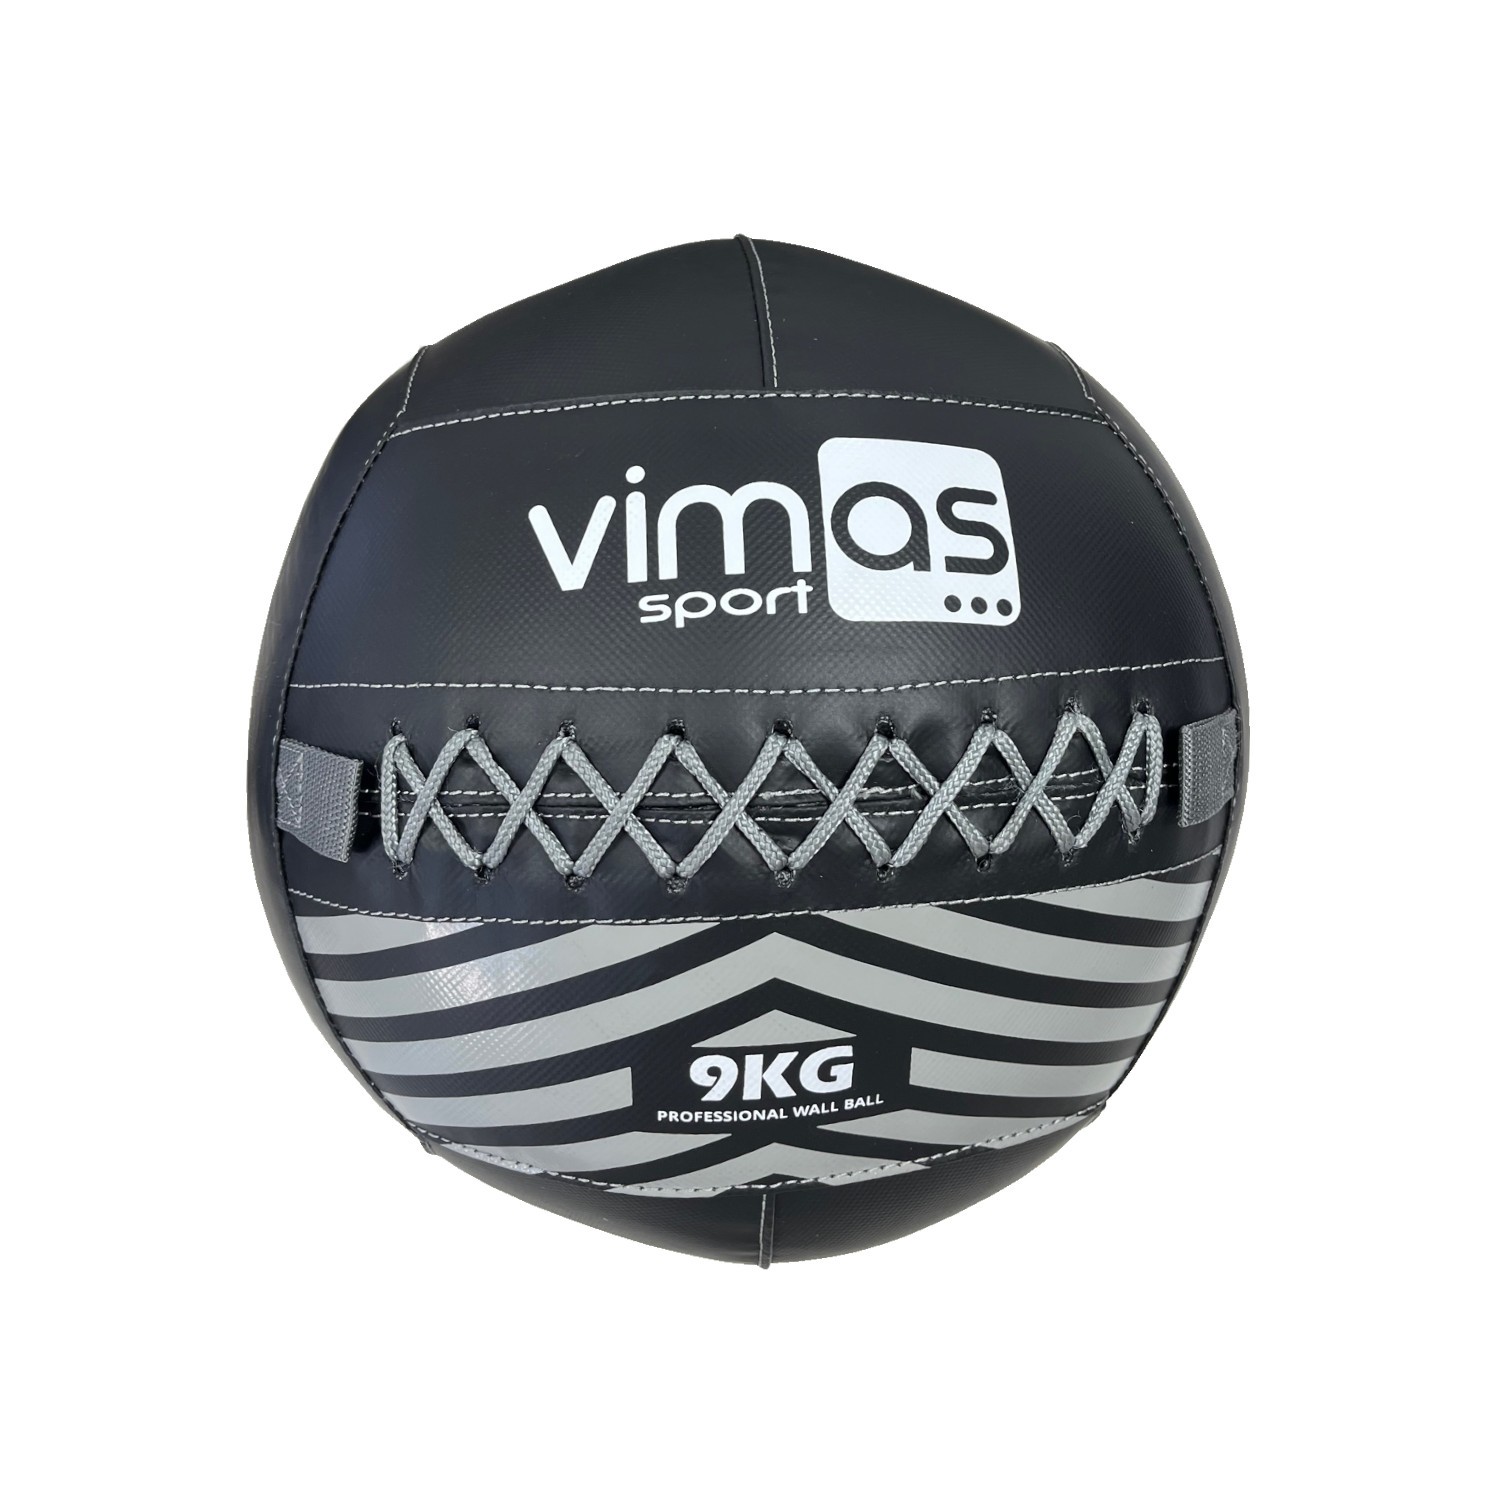 Wall Ball Profesional Vimas Sport 9 Kg